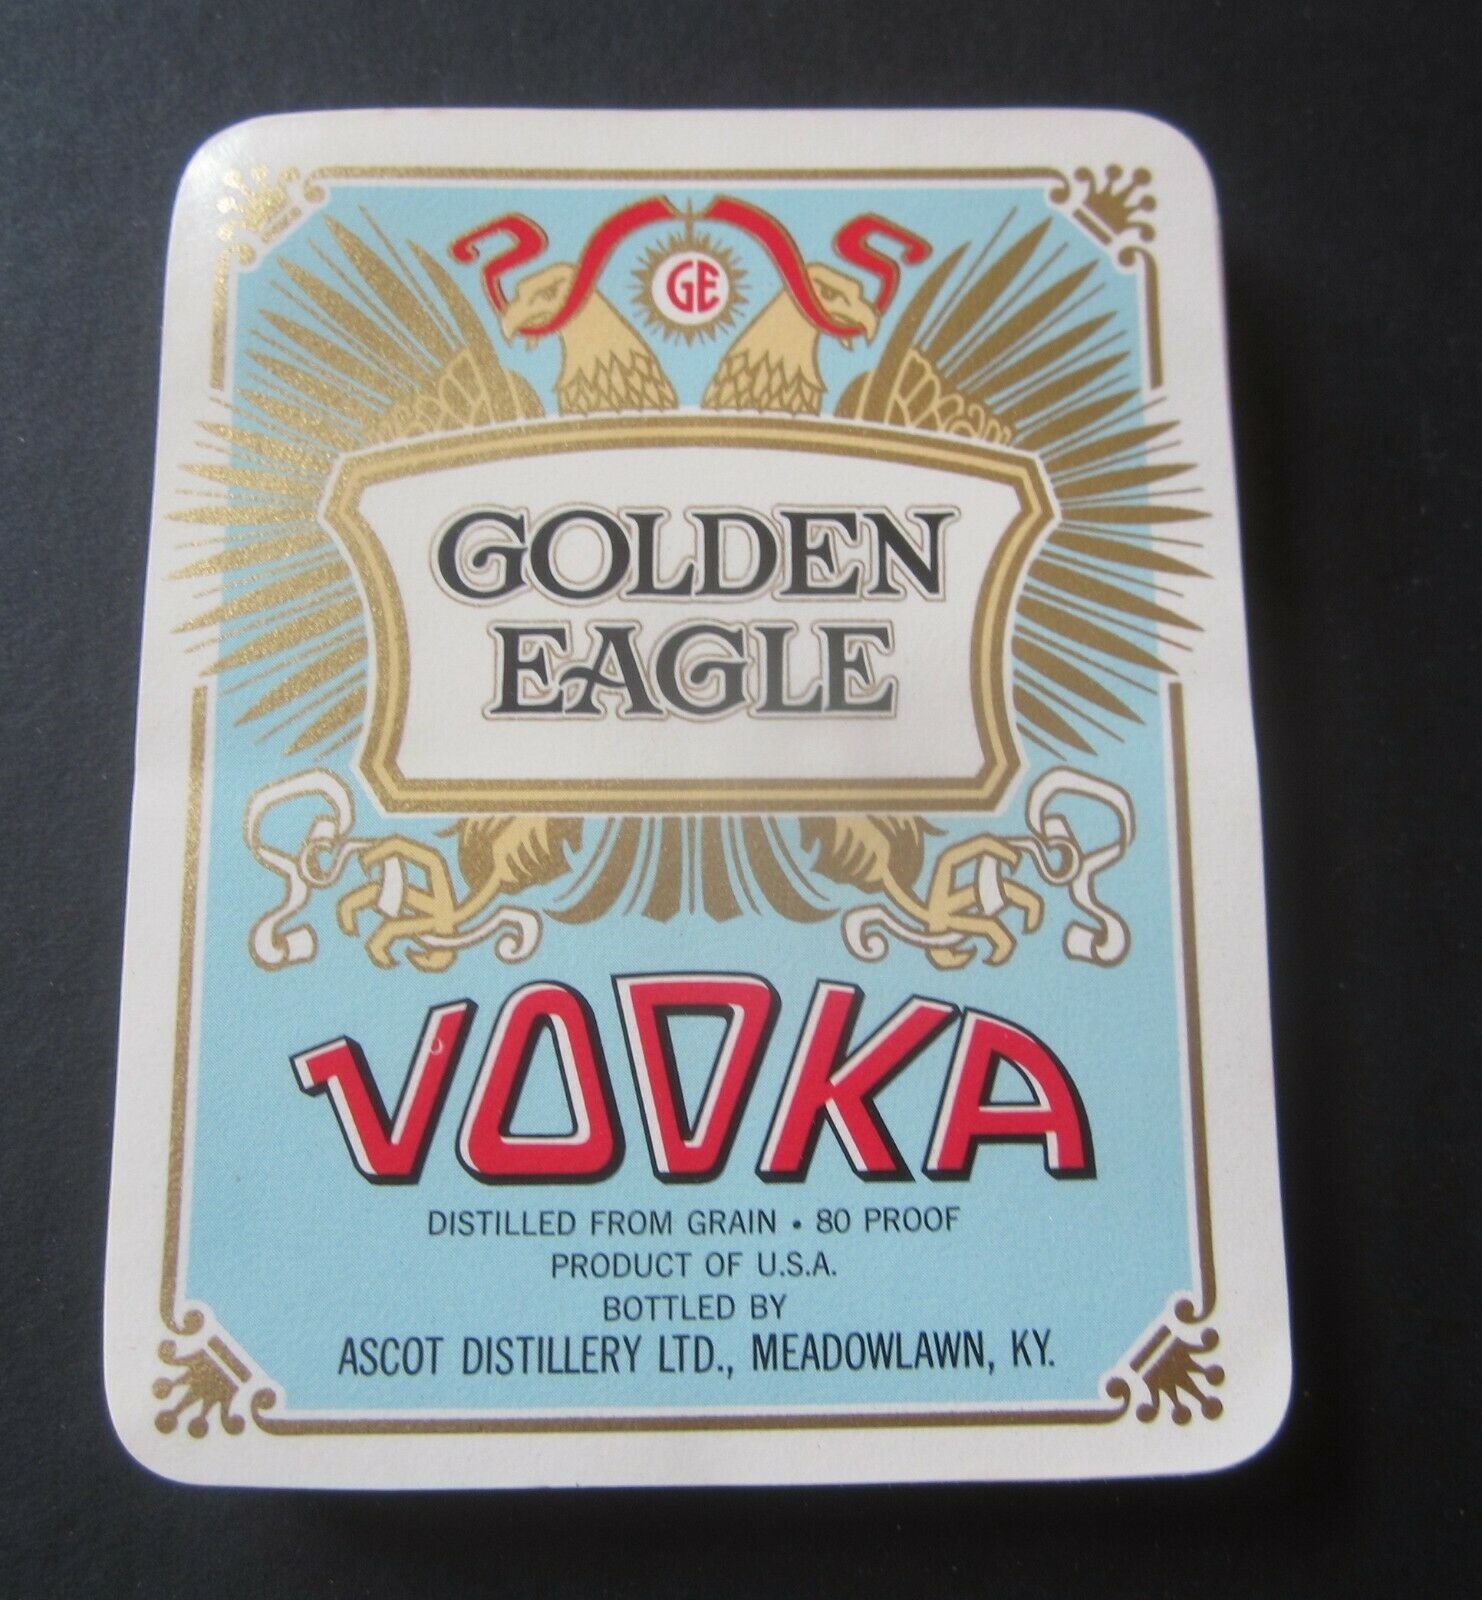  Lot of 100 Old Vintage - Golden Eagle VODKA - ...